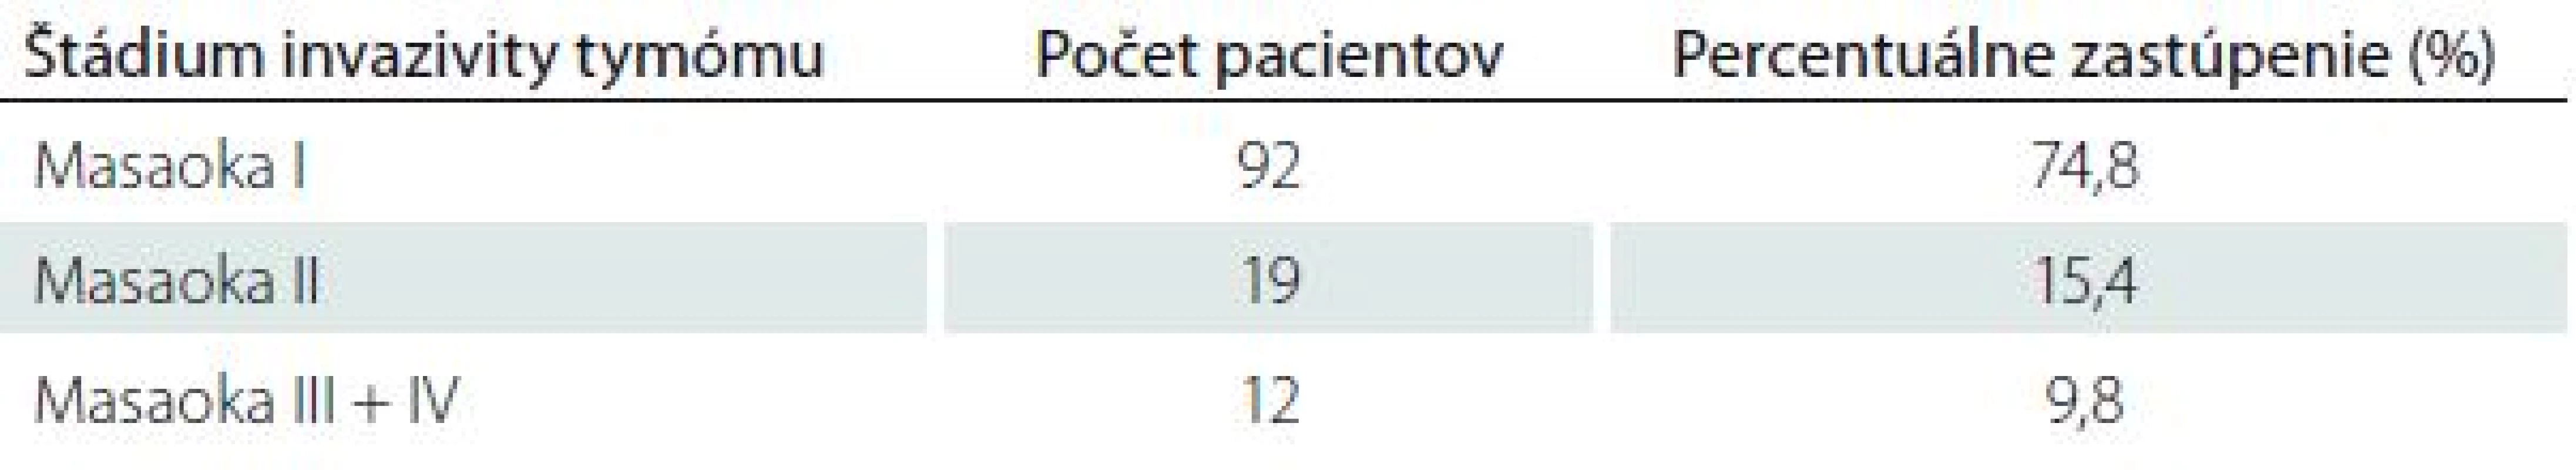 Zastúpenie tymómov podľa klinicko-patologickej klasifikácie podľa Masaoku u pacientov s MGAT v Slovenskej republike.